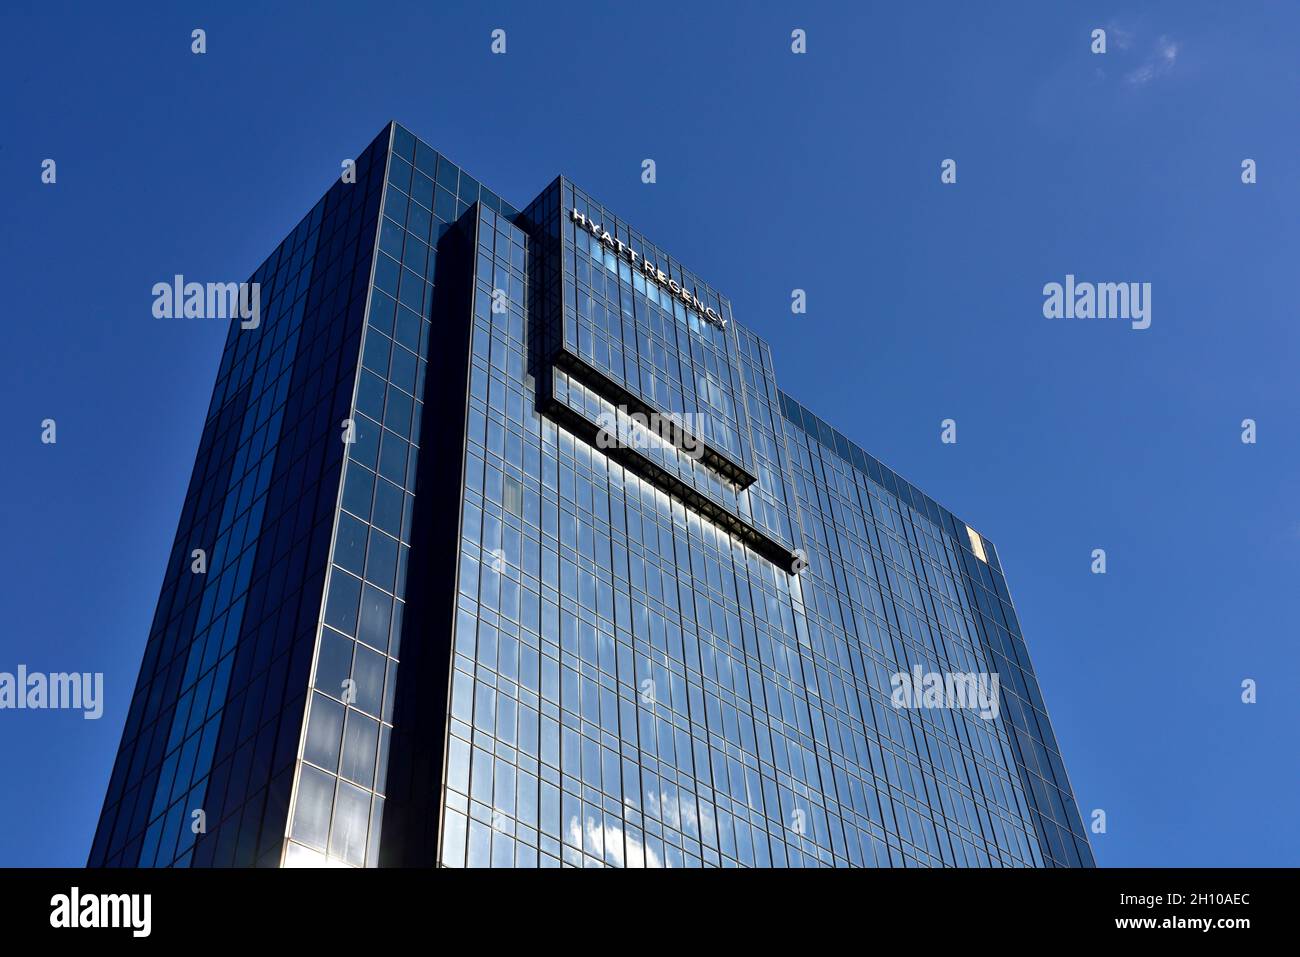 Hyatt Regency hotel building against blue sky Stock Photo